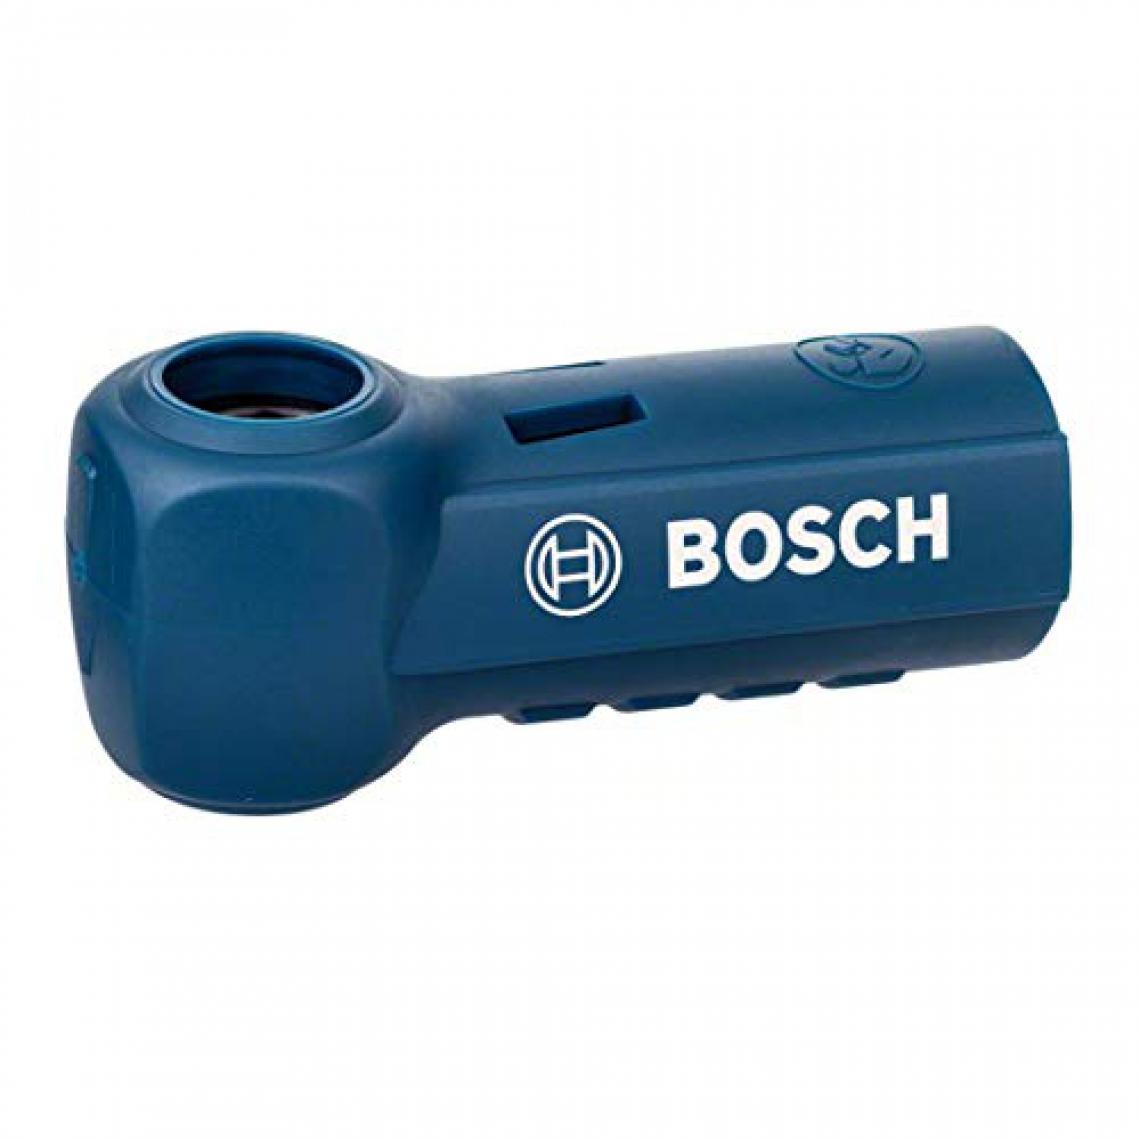 Bosch - Raccordement (pour marteau burineur SDS max-9 Speed Clean, 113 x 43 x 47 mm, accessoire pour marteau burineur) - Accessoires vissage, perçage